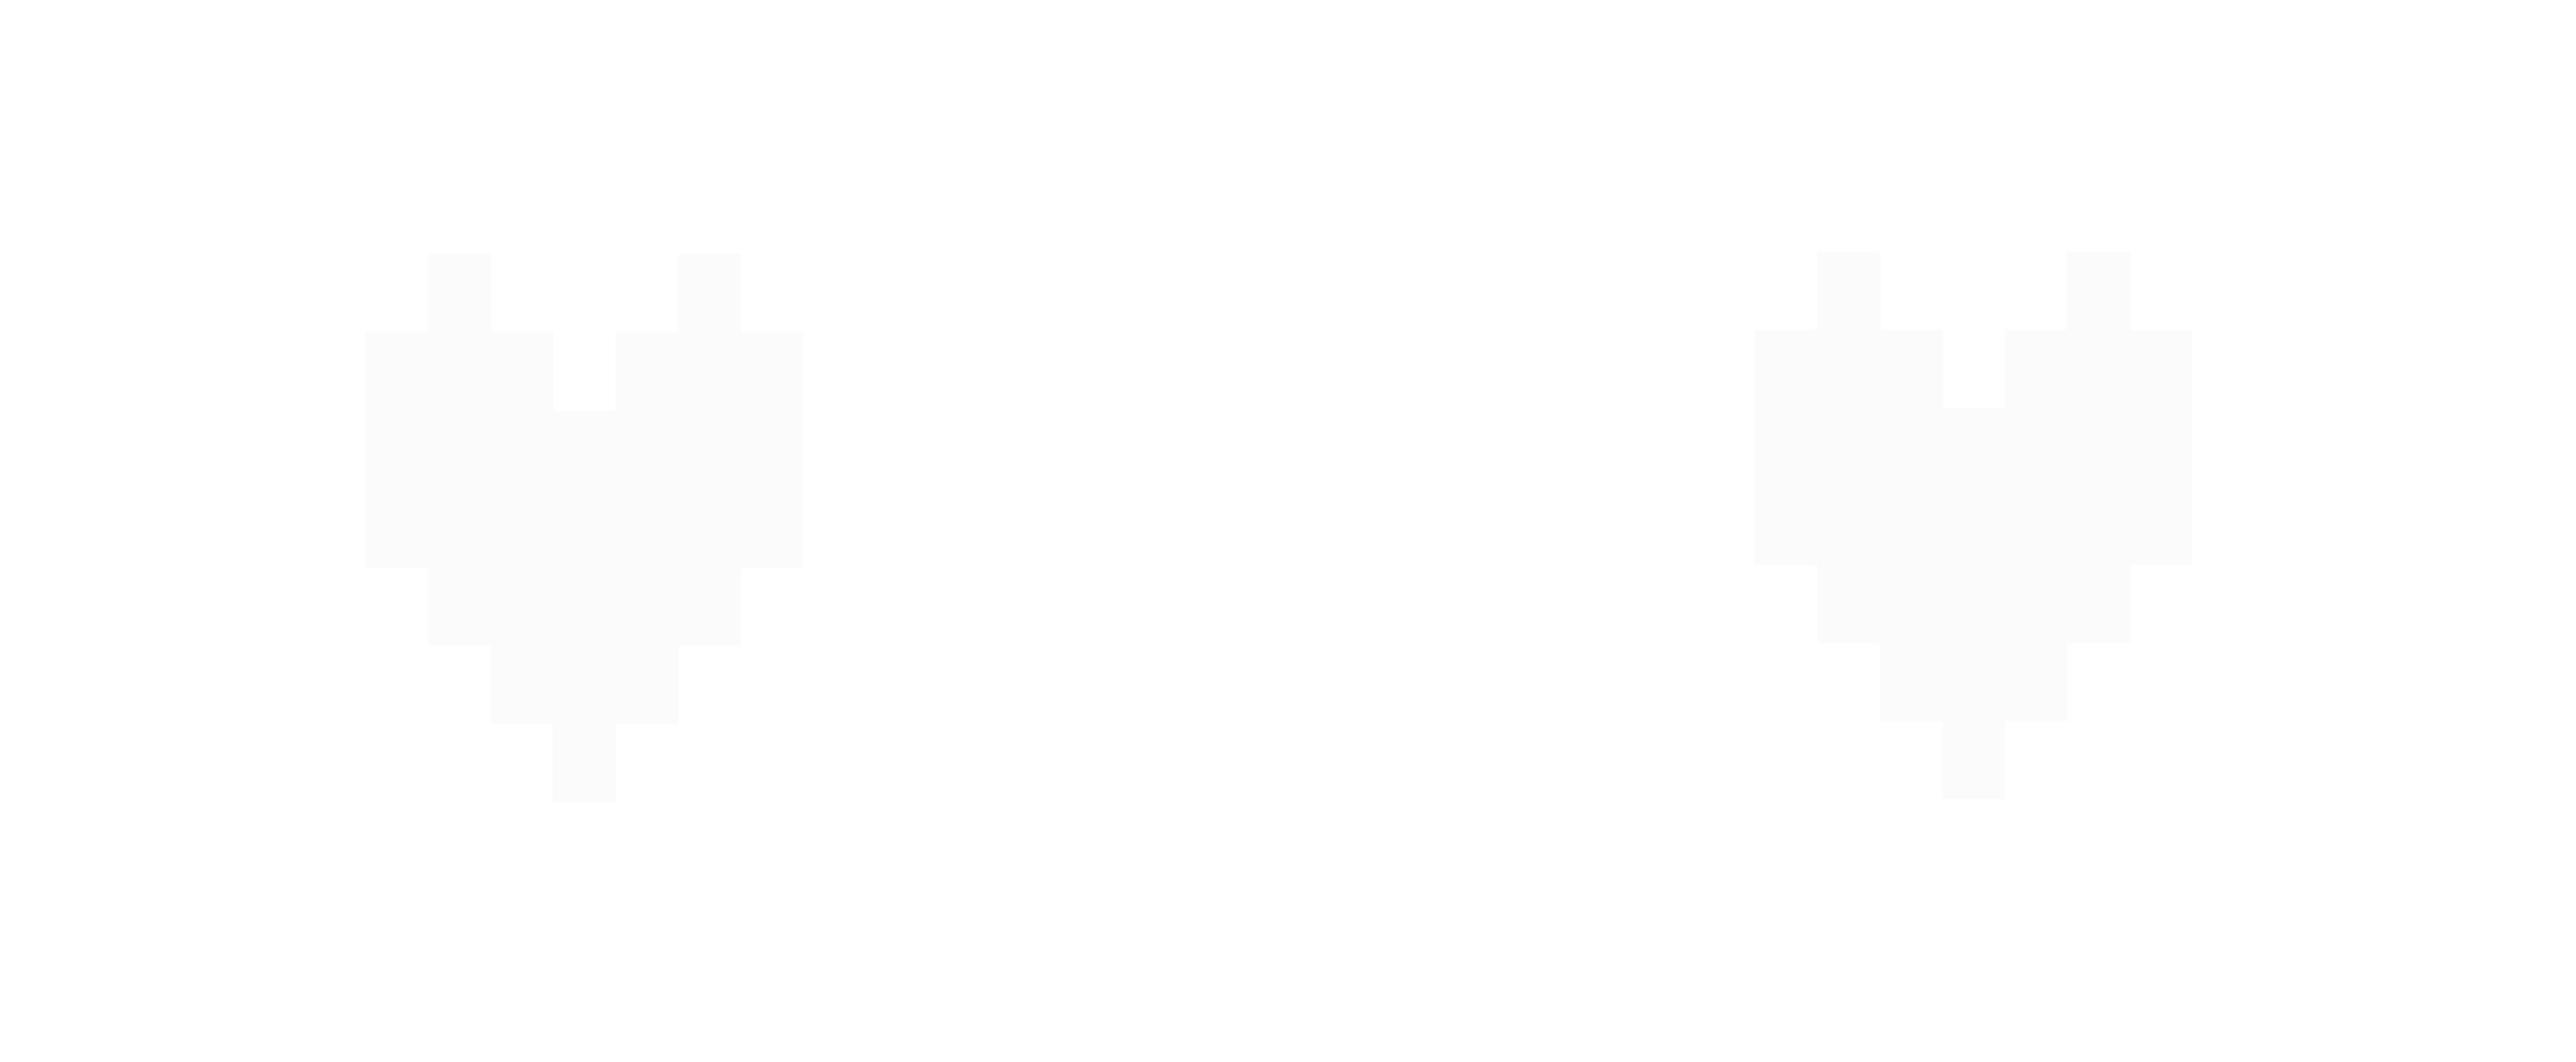 Bit Warrior